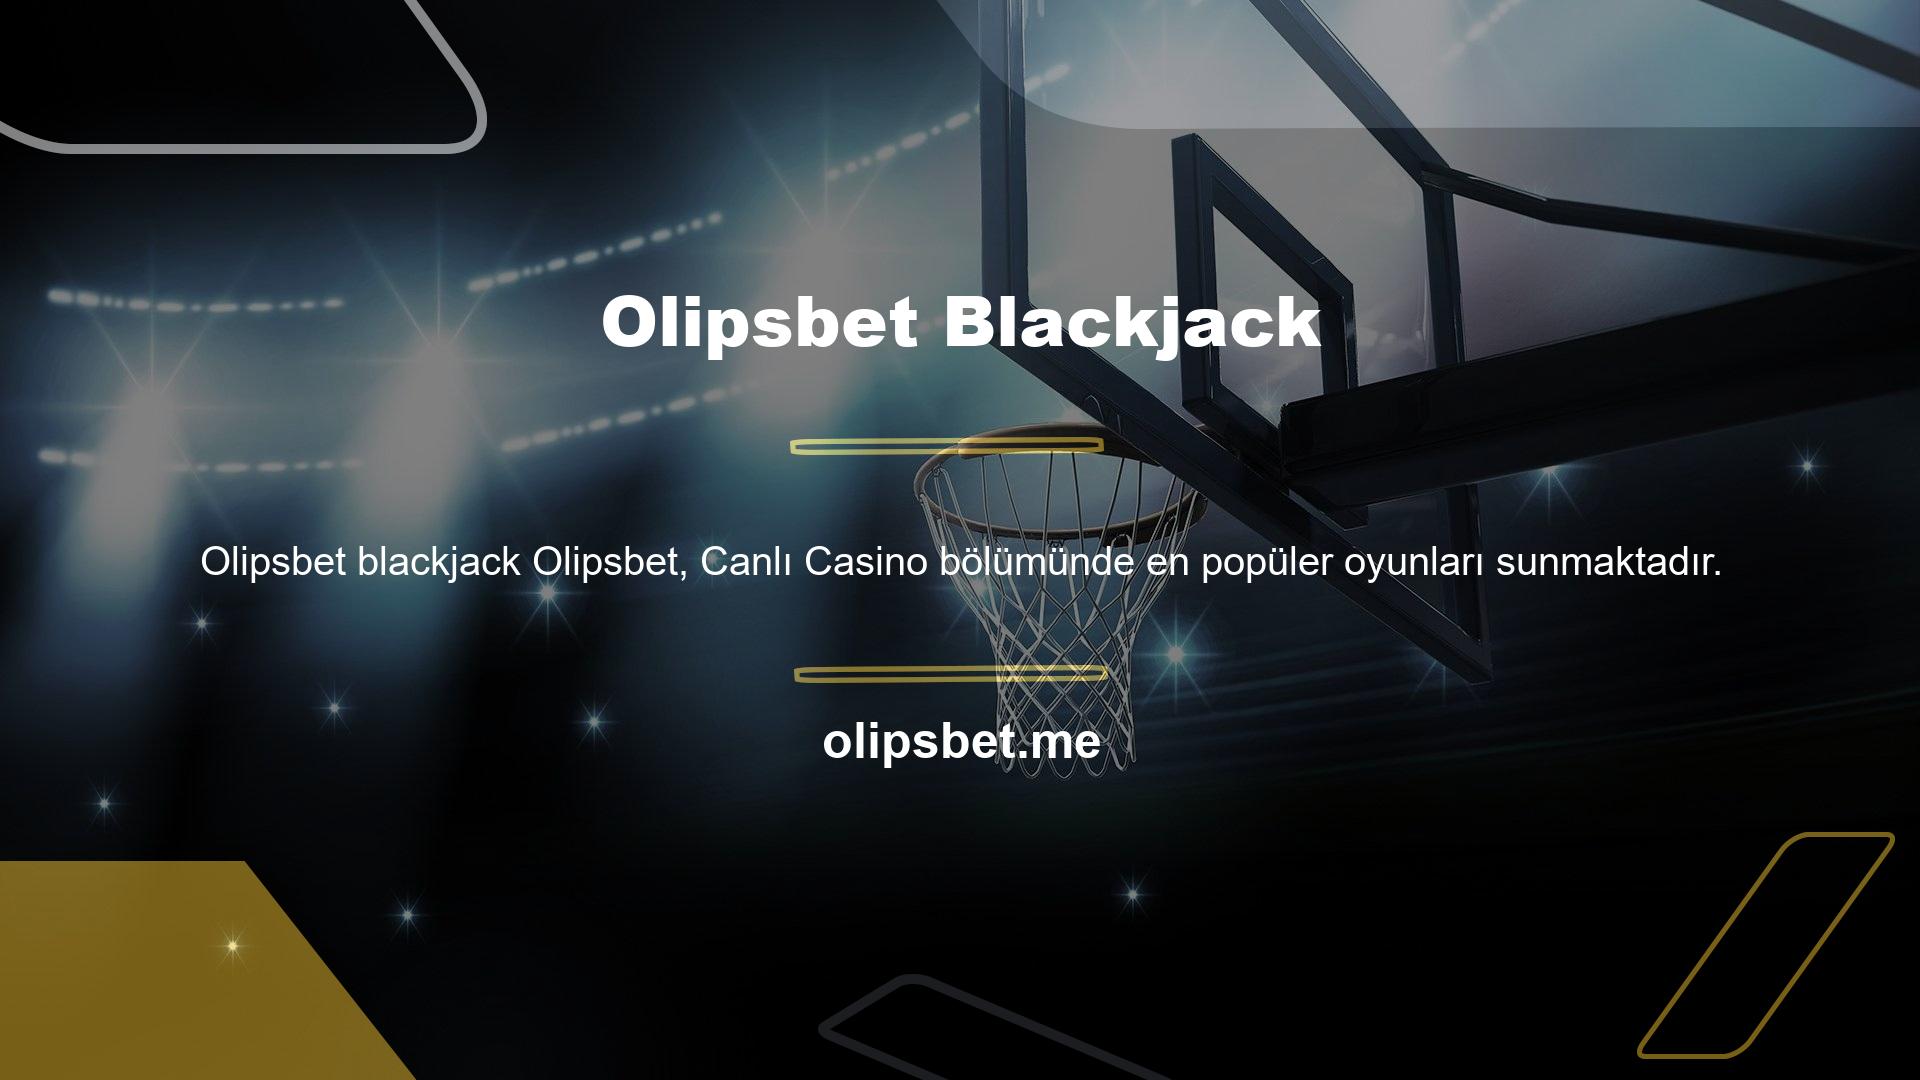 Olipsbet Blackjack